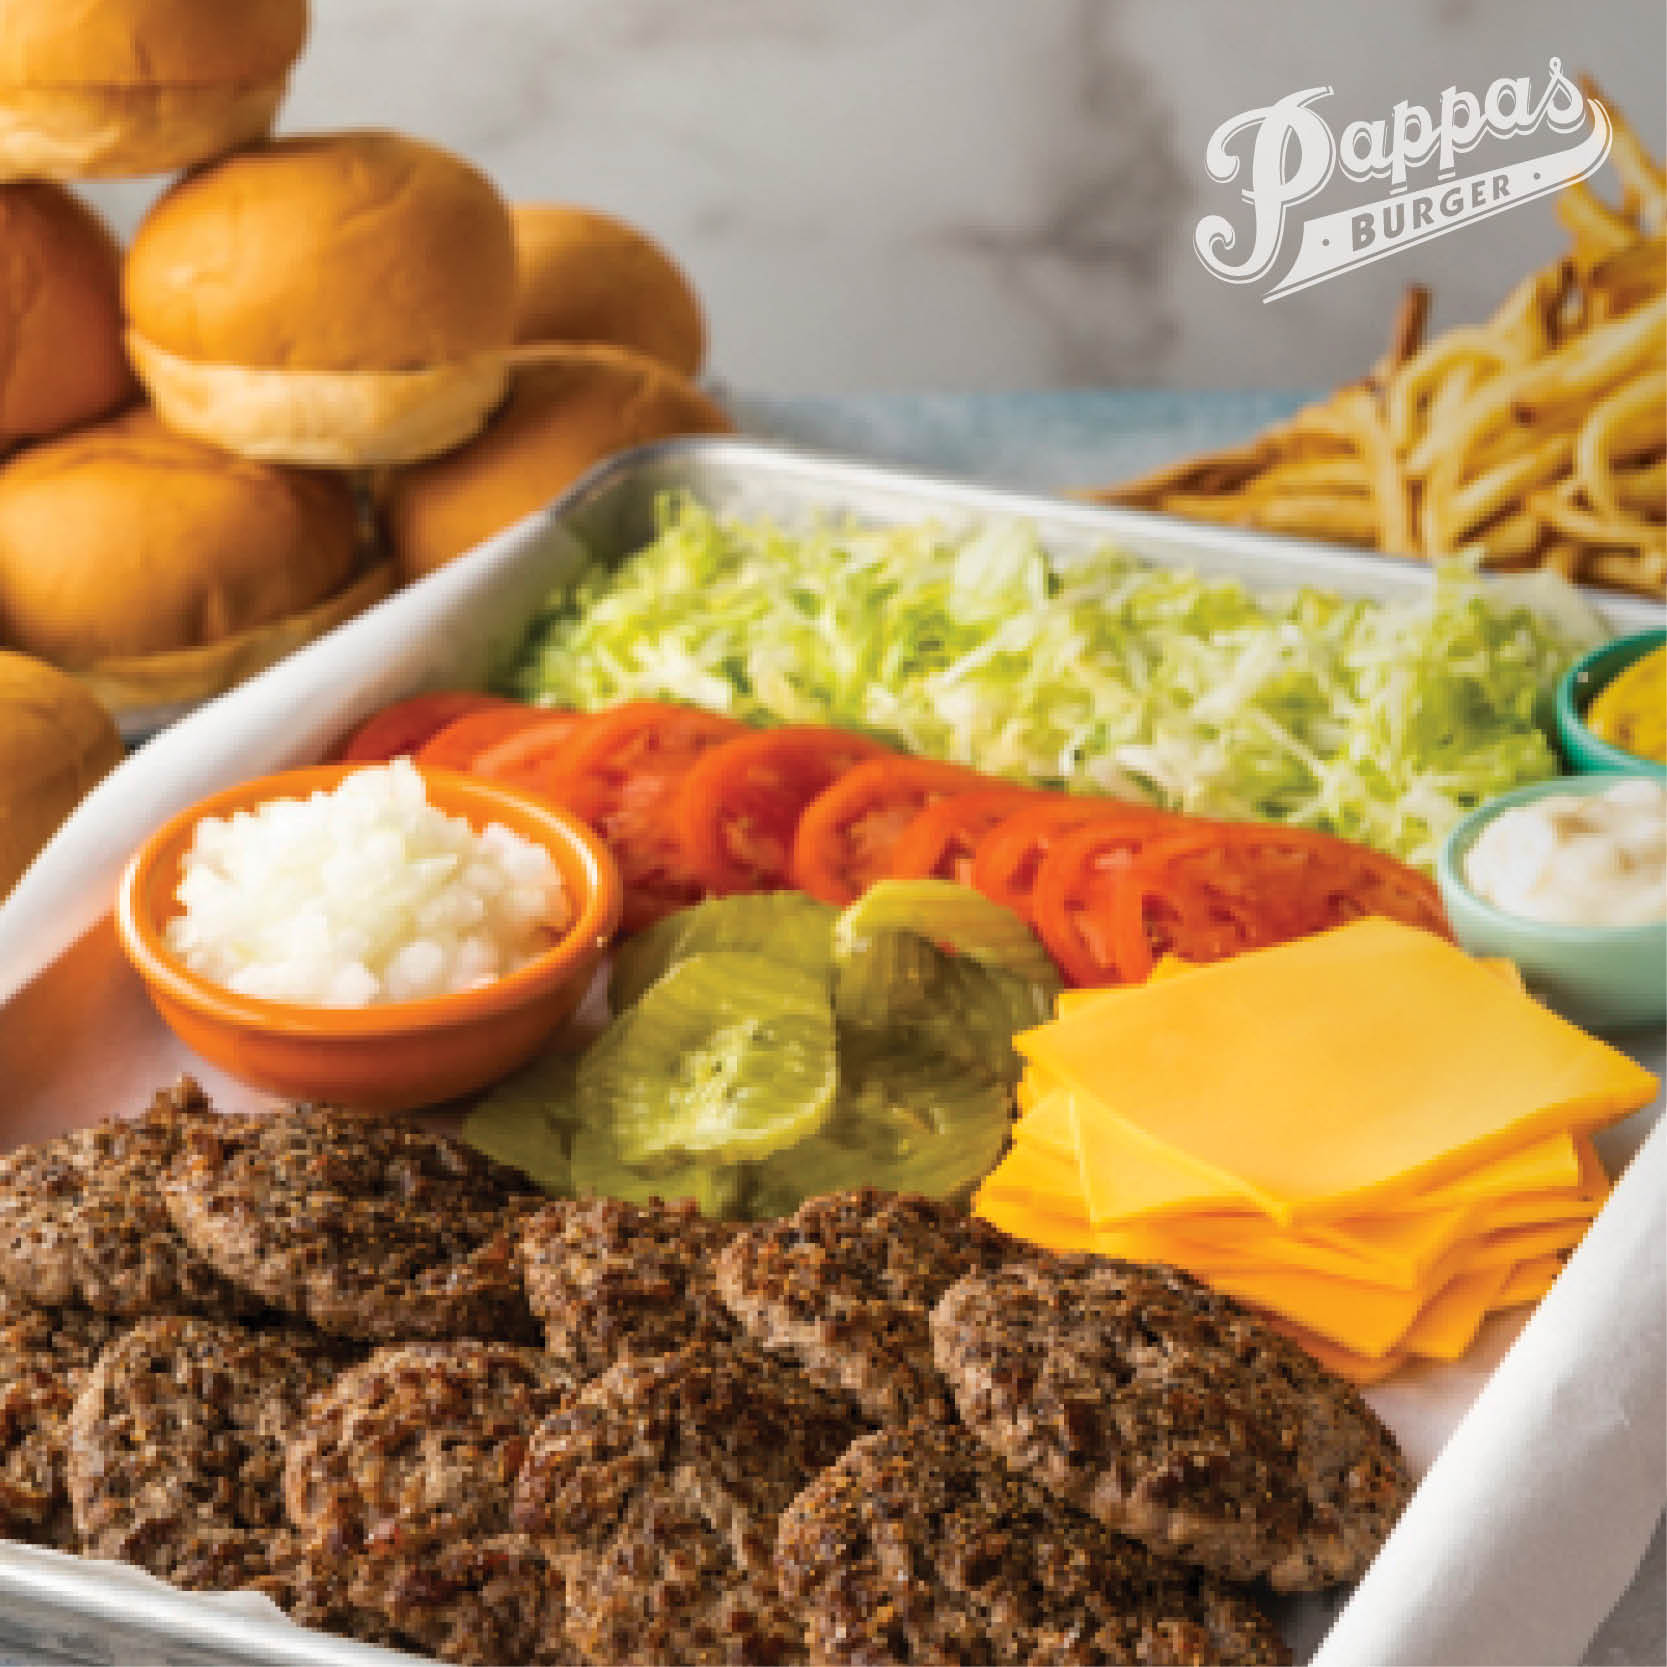 Pappas Burger - Burger Weekly